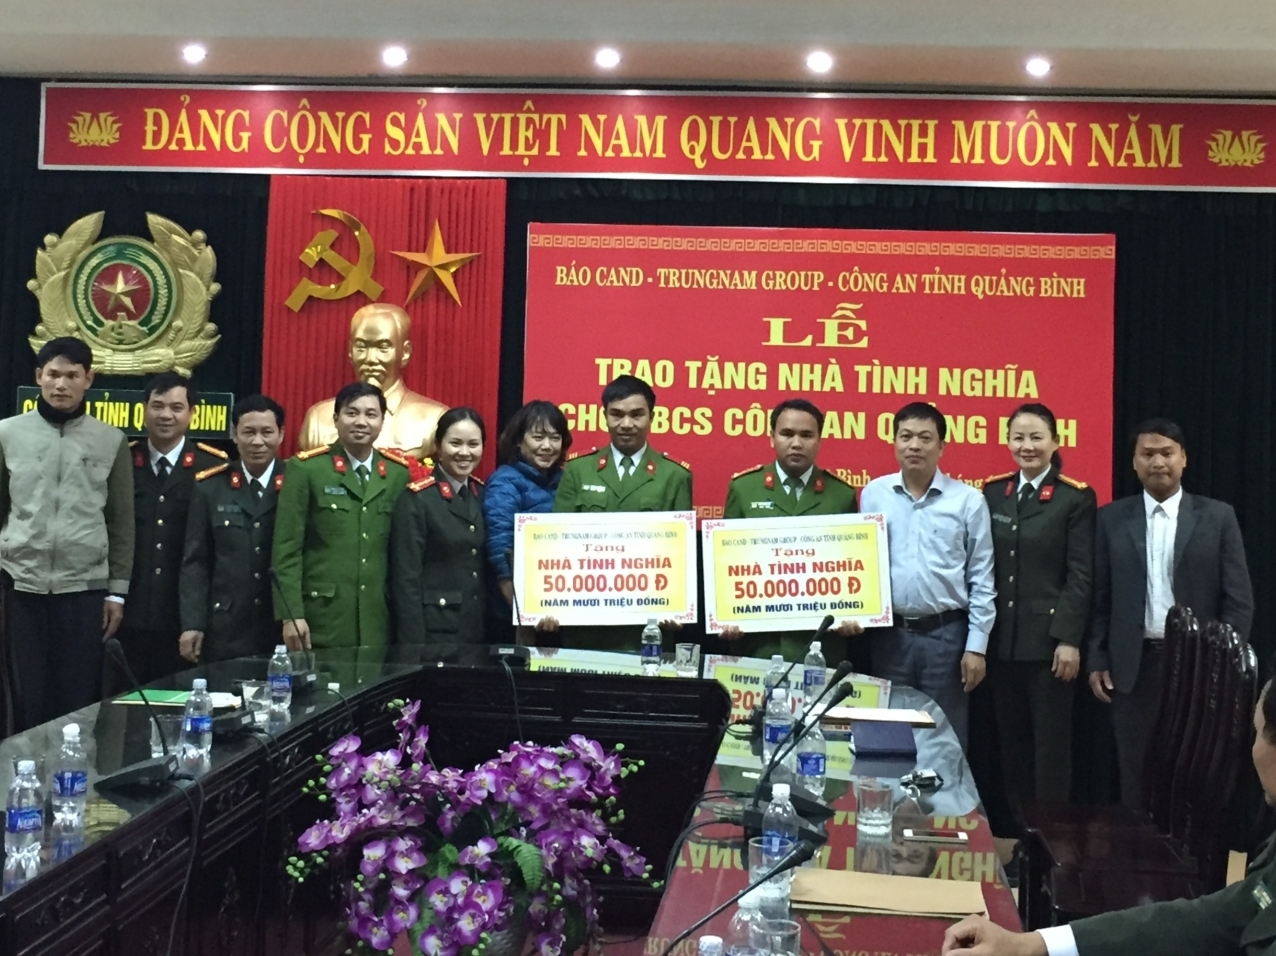 Đại diện Công ty Trung Nam, Báo CAND và Công an tỉnh Quảng Bình trao số tiền hỗ trợ nhà ở cho cán bộ chiến sỹ Công an tỉnh